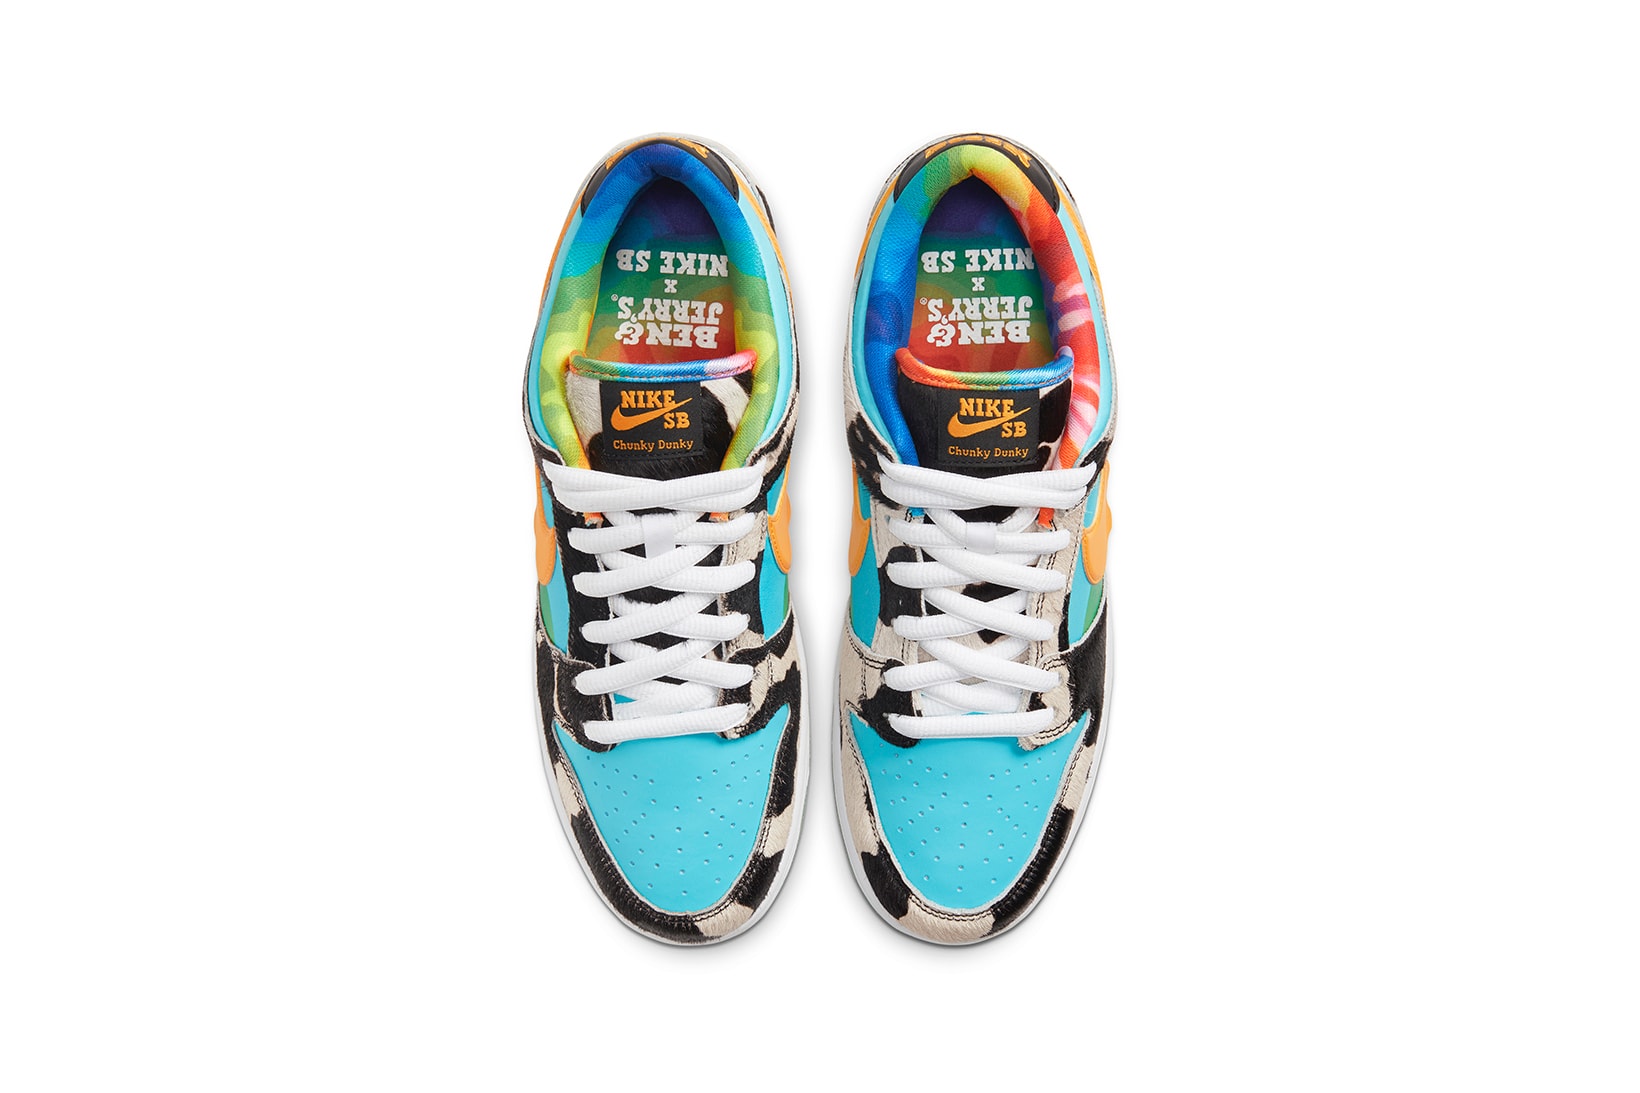 The Ben & Jerry's x Nike SB Dunk Gets a Release Date - KLEKT Blog